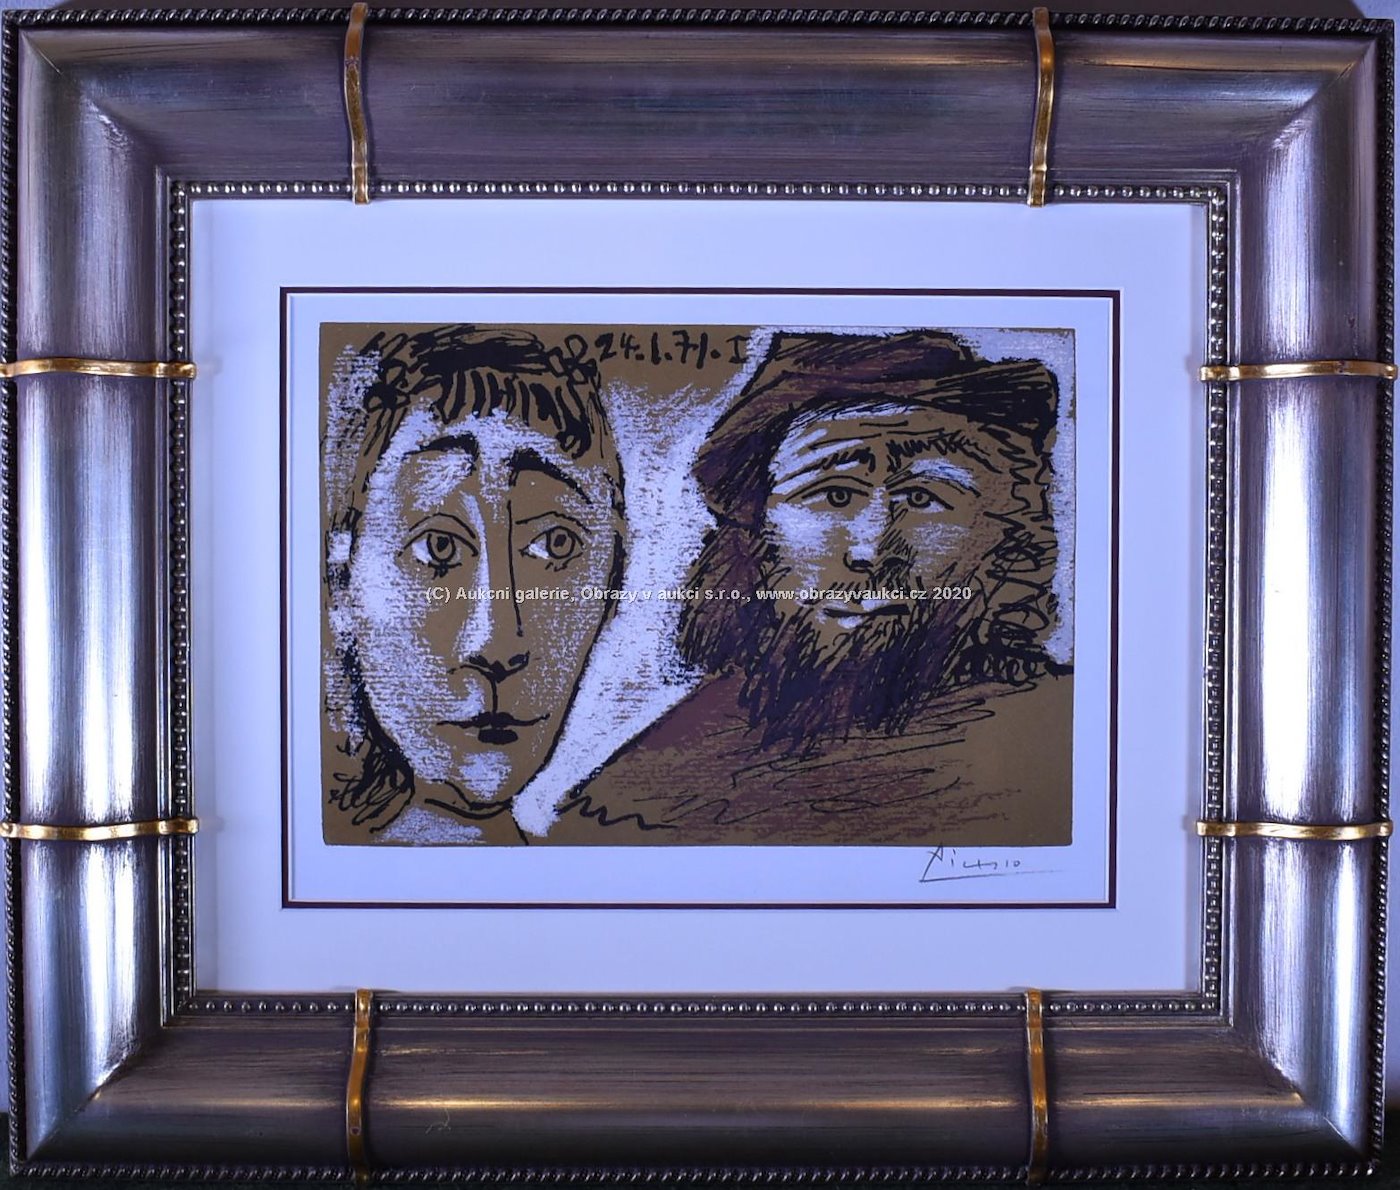 Pablo Picasso - Homme et femme, Opus 394